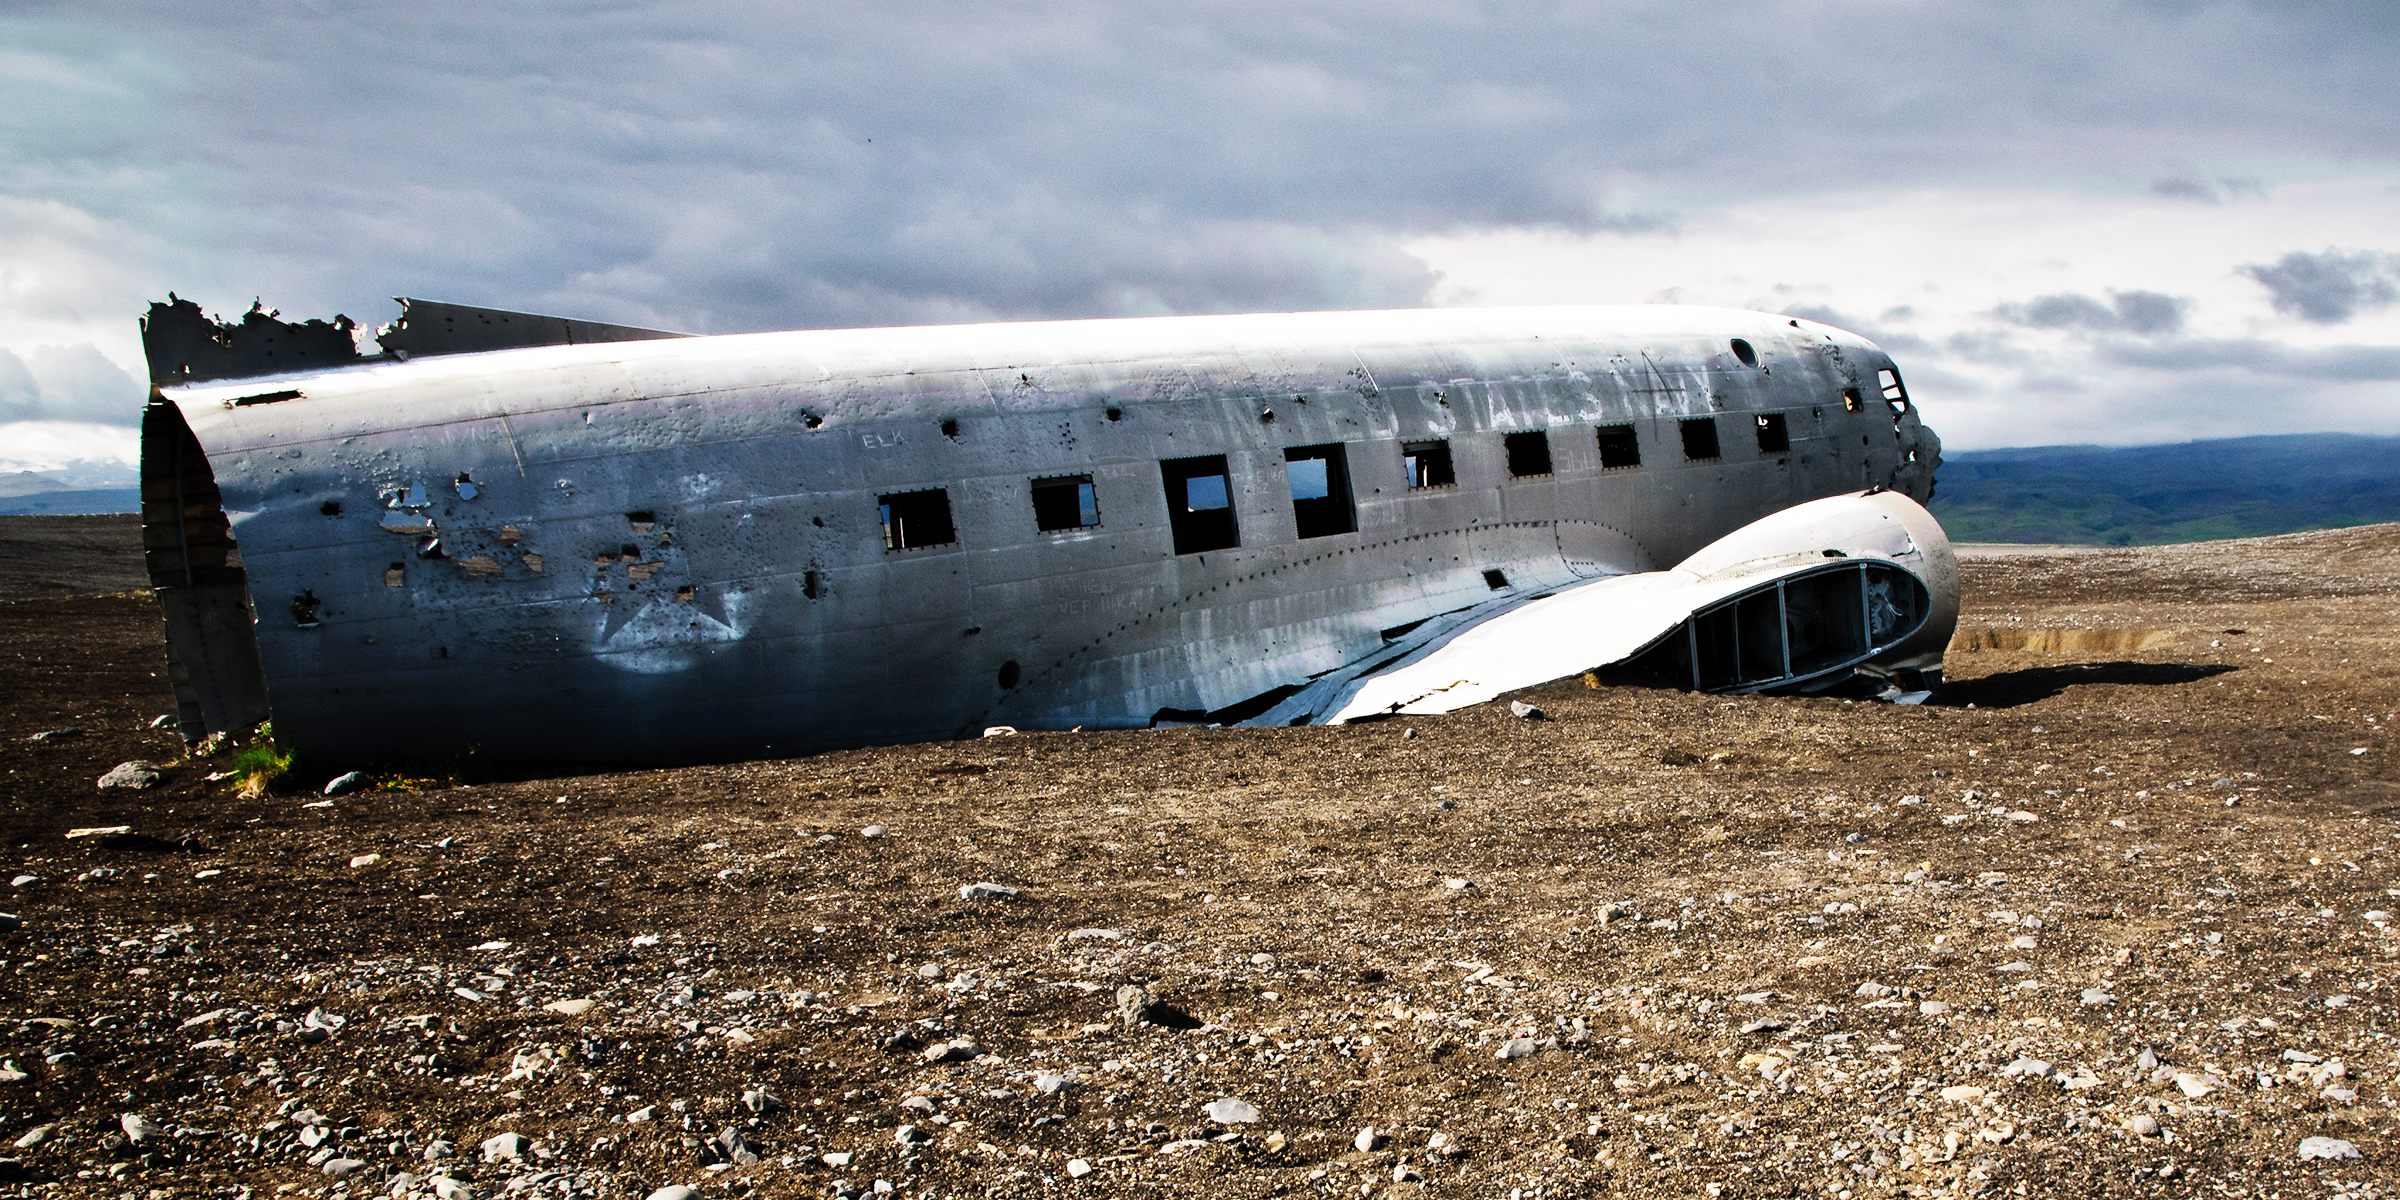 Debris after plane crash | Source: Shutterstock